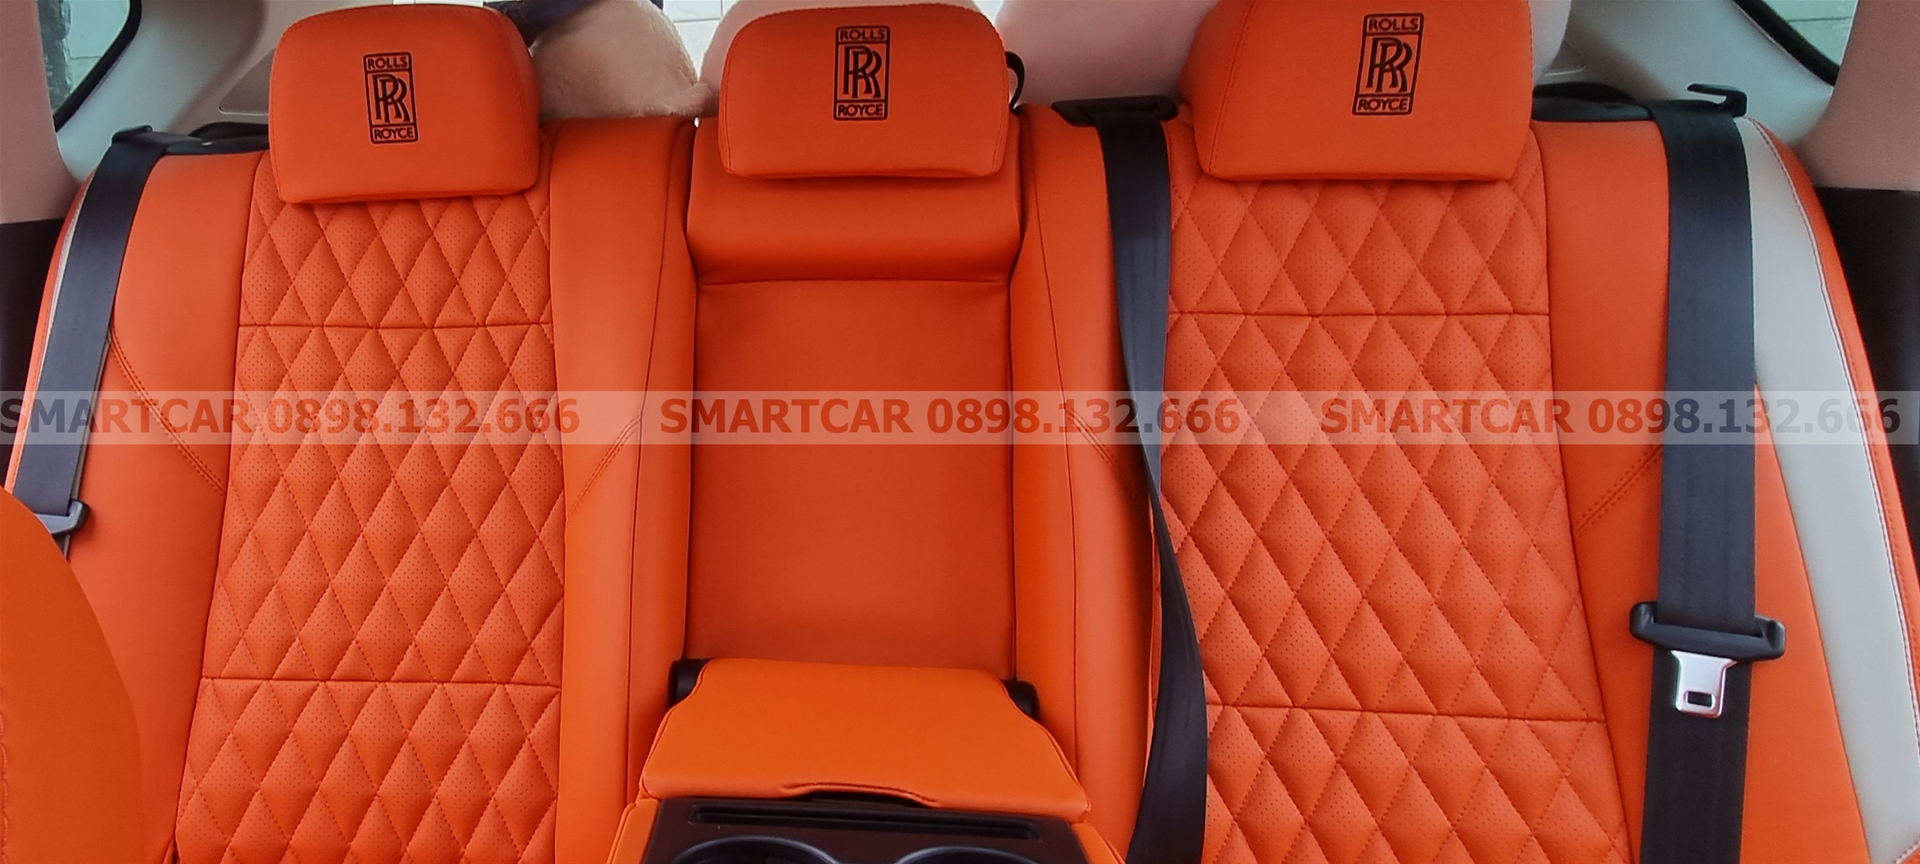 Đổi màu nội thất Mazda CX5 cam Hermes - Hình 2